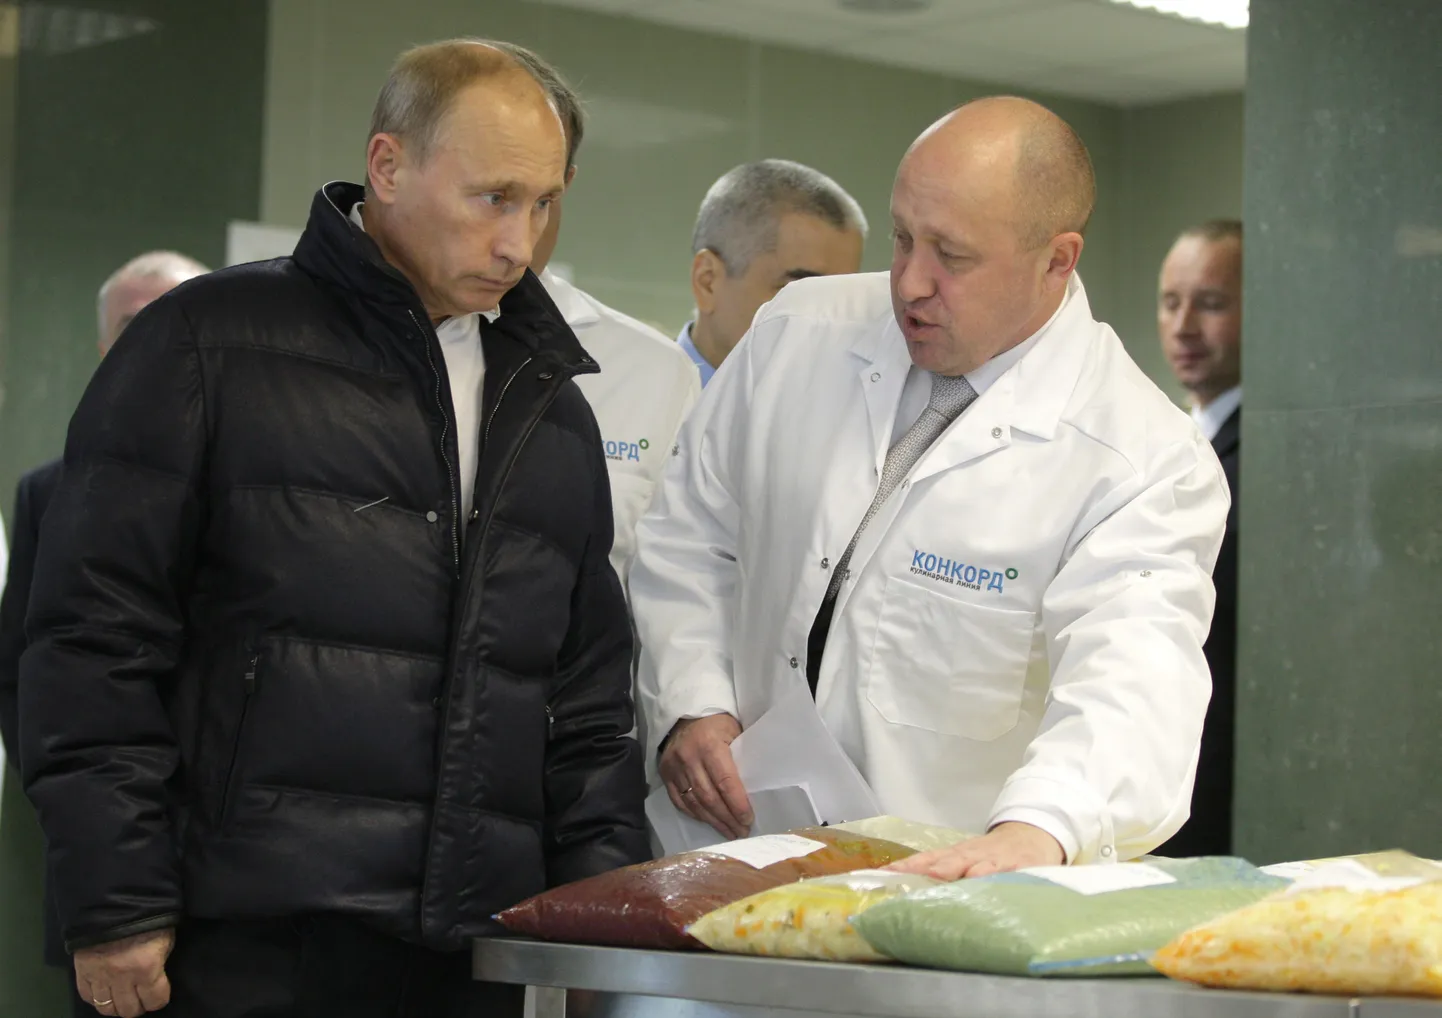 KOHE NÄHA, ET VANAD SÕBRAD: Septembris 2010 näitas “Putini kokk” toonasele peaministrile Vladimir Putinile uut tööstushoonet, kus Concorde valmistas poolfabrikaate koolidele. Täna võime selle loo kokku võtta nii: kui mooramaamees on oma töö teinud, siis mooramaamees võib minna. See on nii Venemaa moodi.